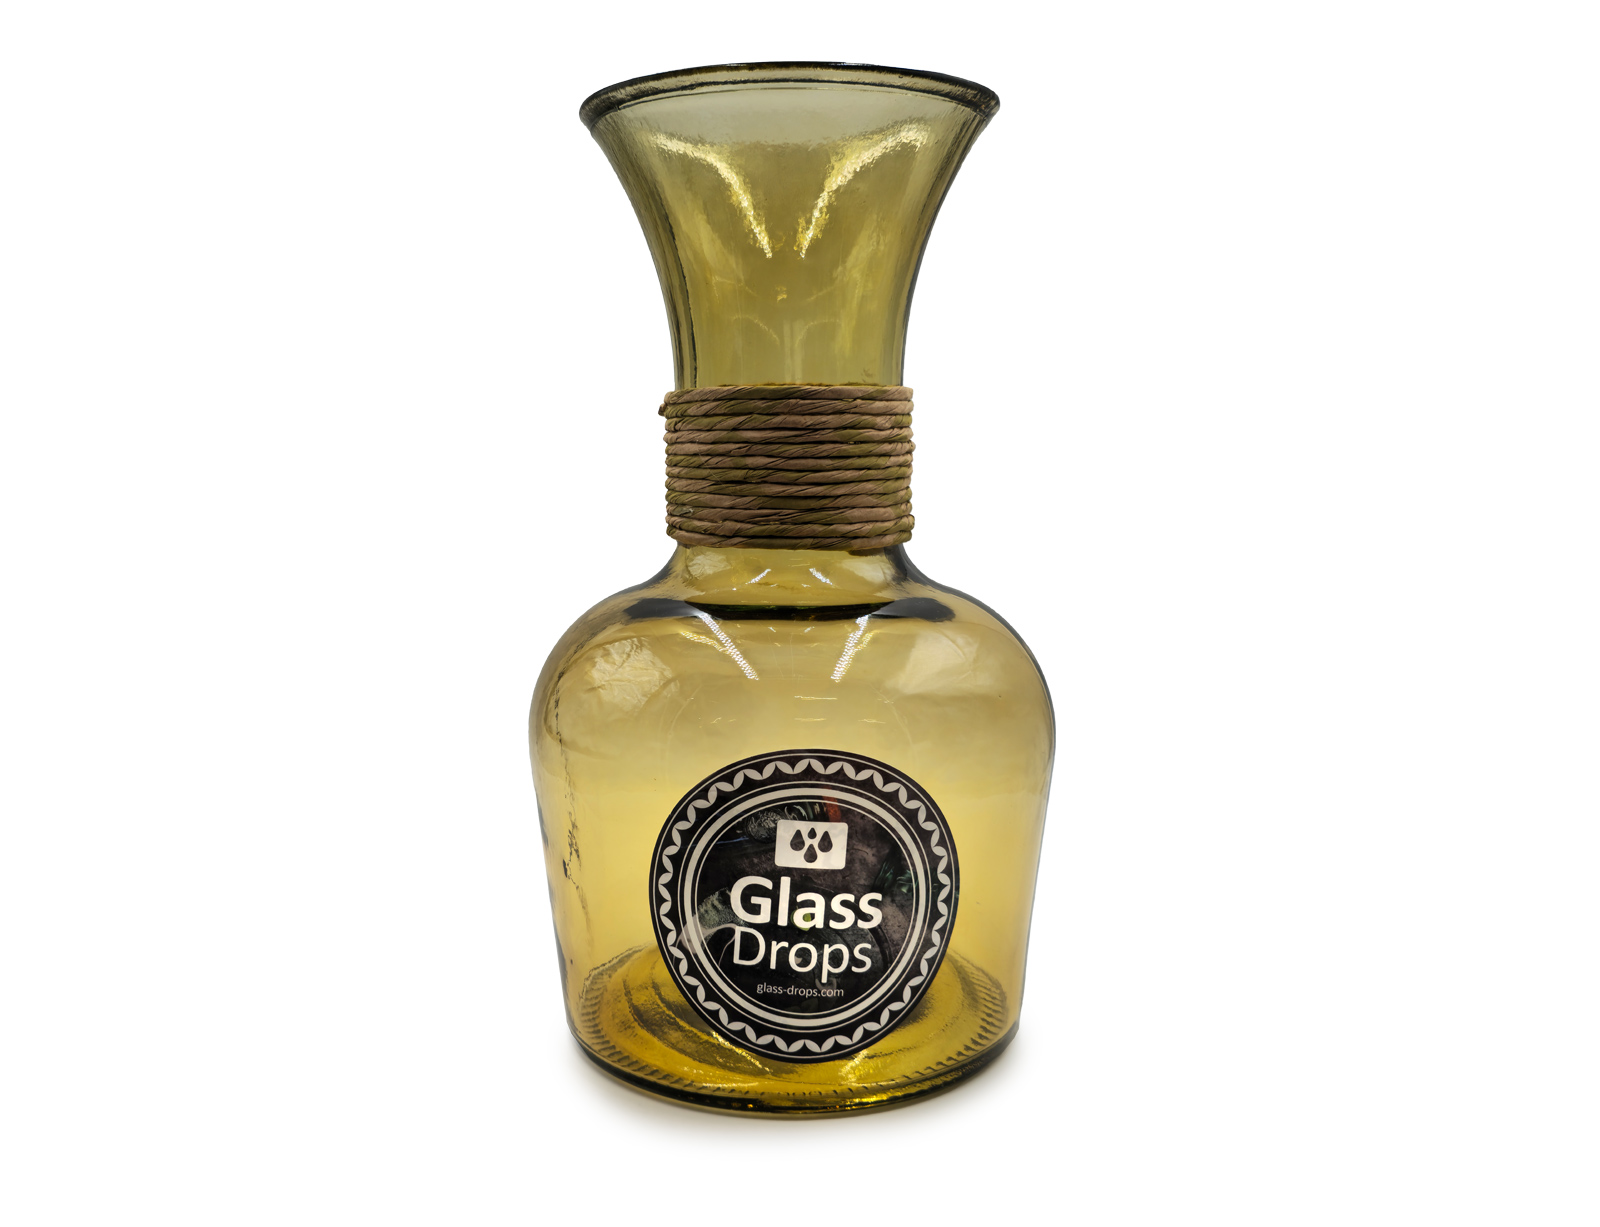 Εικόνα Διακοσμητικό Βάζο Glass Drops Chicago Enea (E5649DB411) Aπό 100% ανακυκλωμένο γυαλί, Χωρητικότητας 4L, Διαστάσεων Ø 19 x Υ 33 cm, Yellow Gold